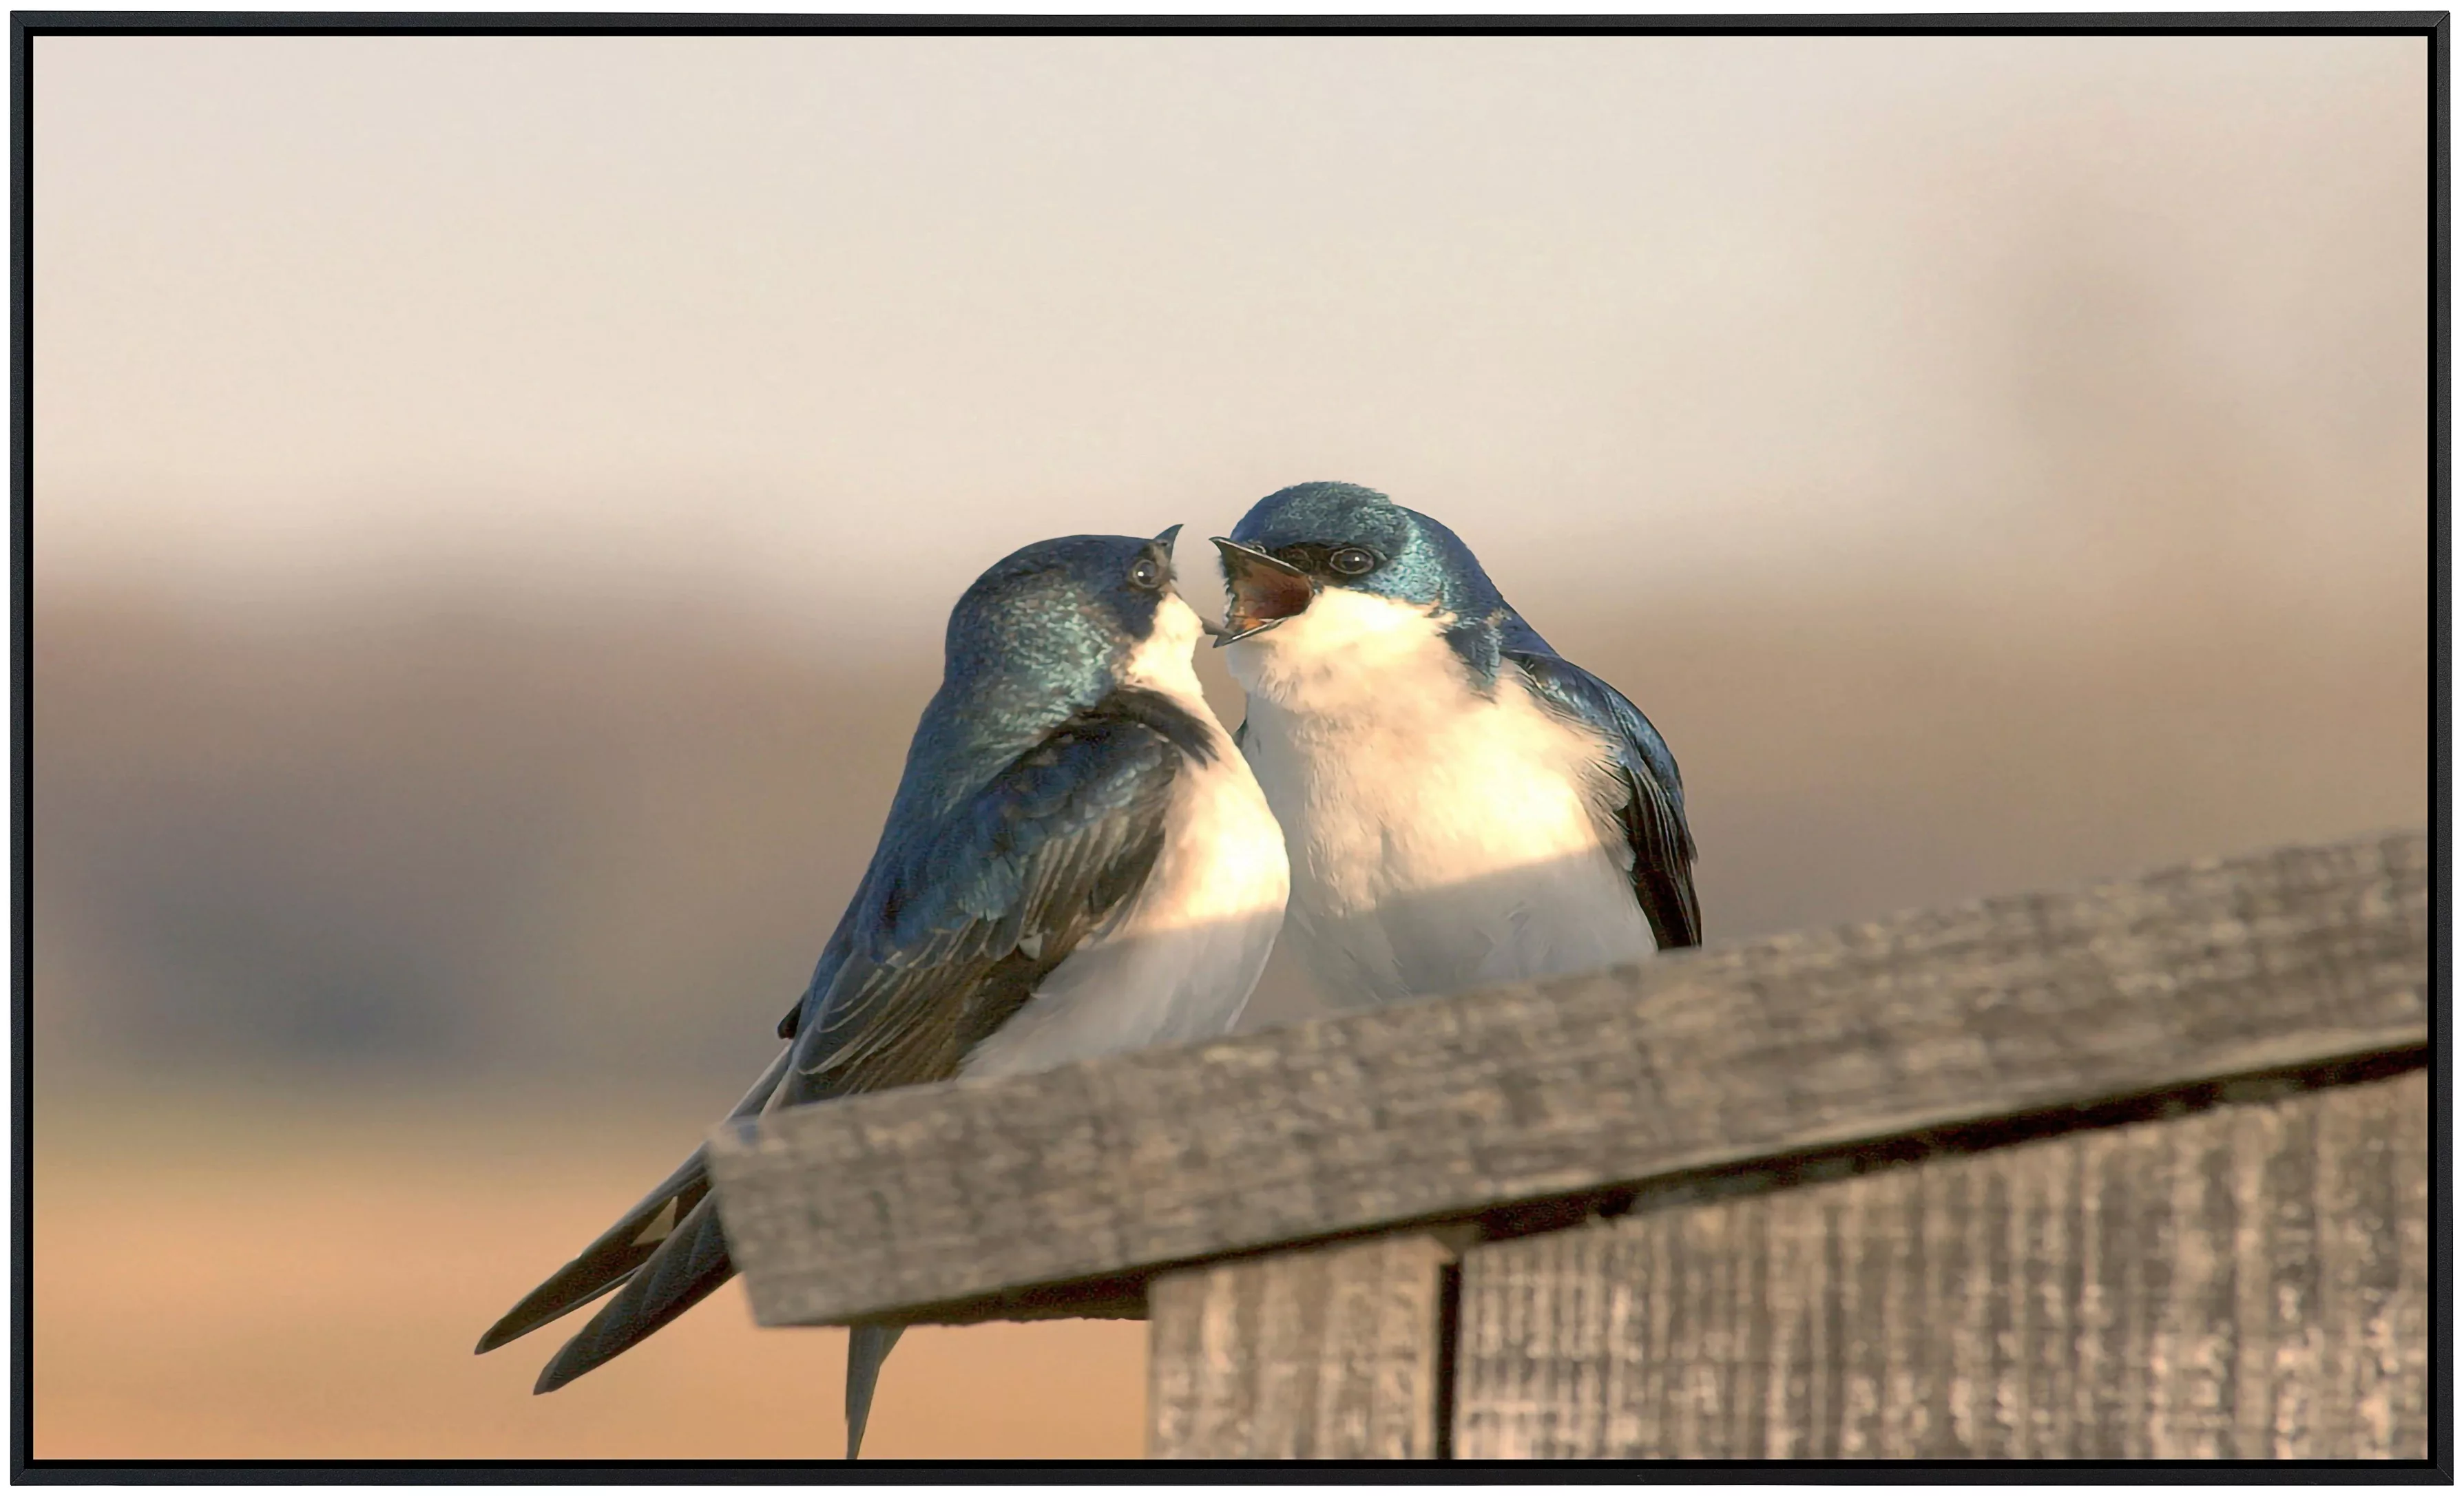 Papermoon Infrarotheizung »Liebesvögel«, sehr angenehme Strahlungswärme günstig online kaufen